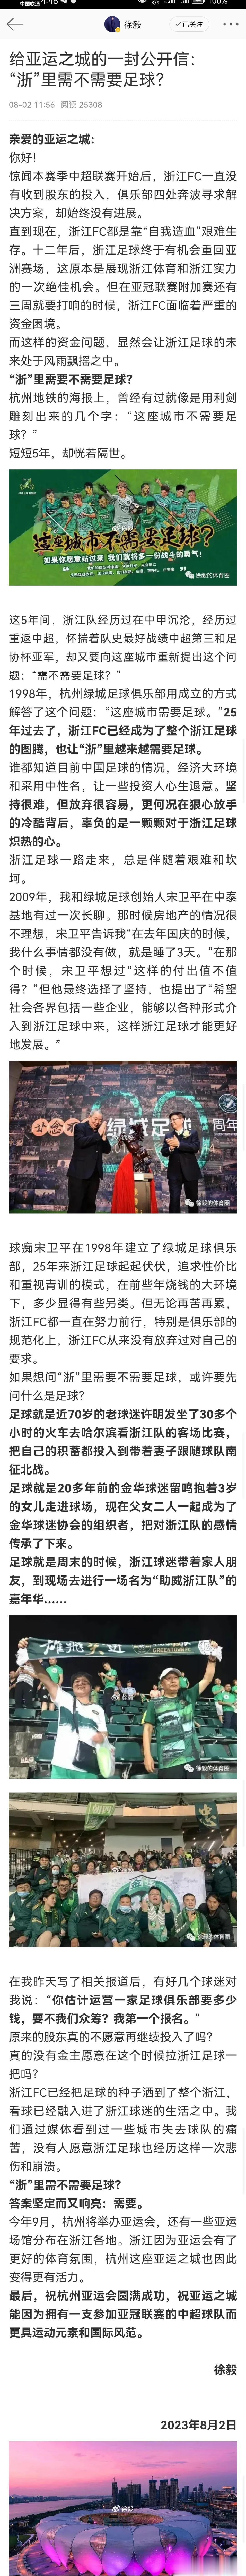 记者:浙江队遭遇资金困难，希望得到重视和支援

记者徐毅:本赛季中超联赛开始后，(1)